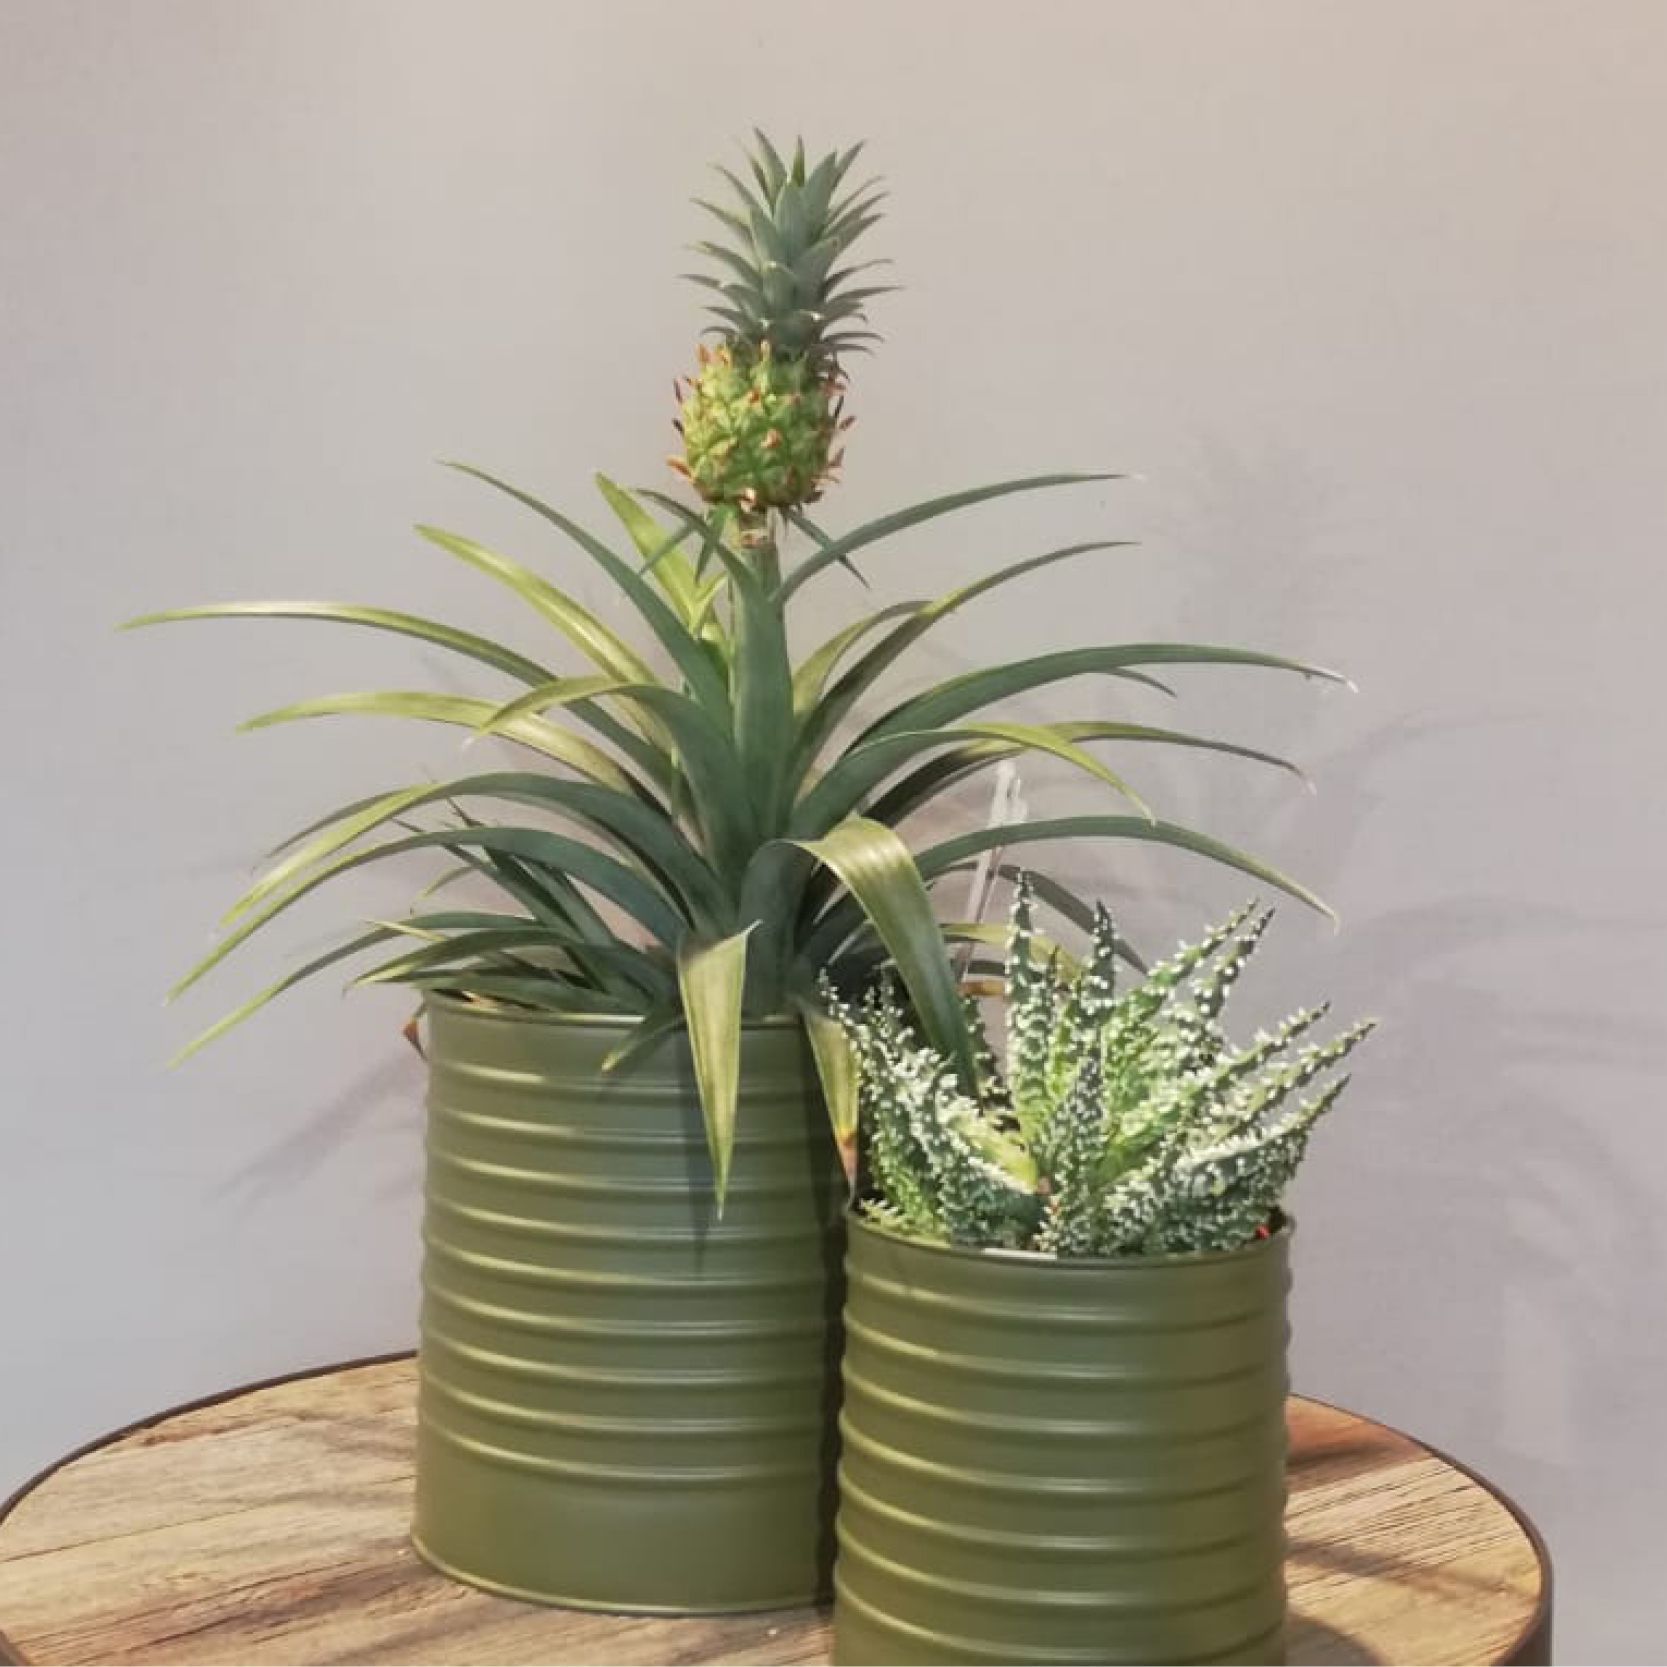 zwei grüne Vasen mit Pflanzen